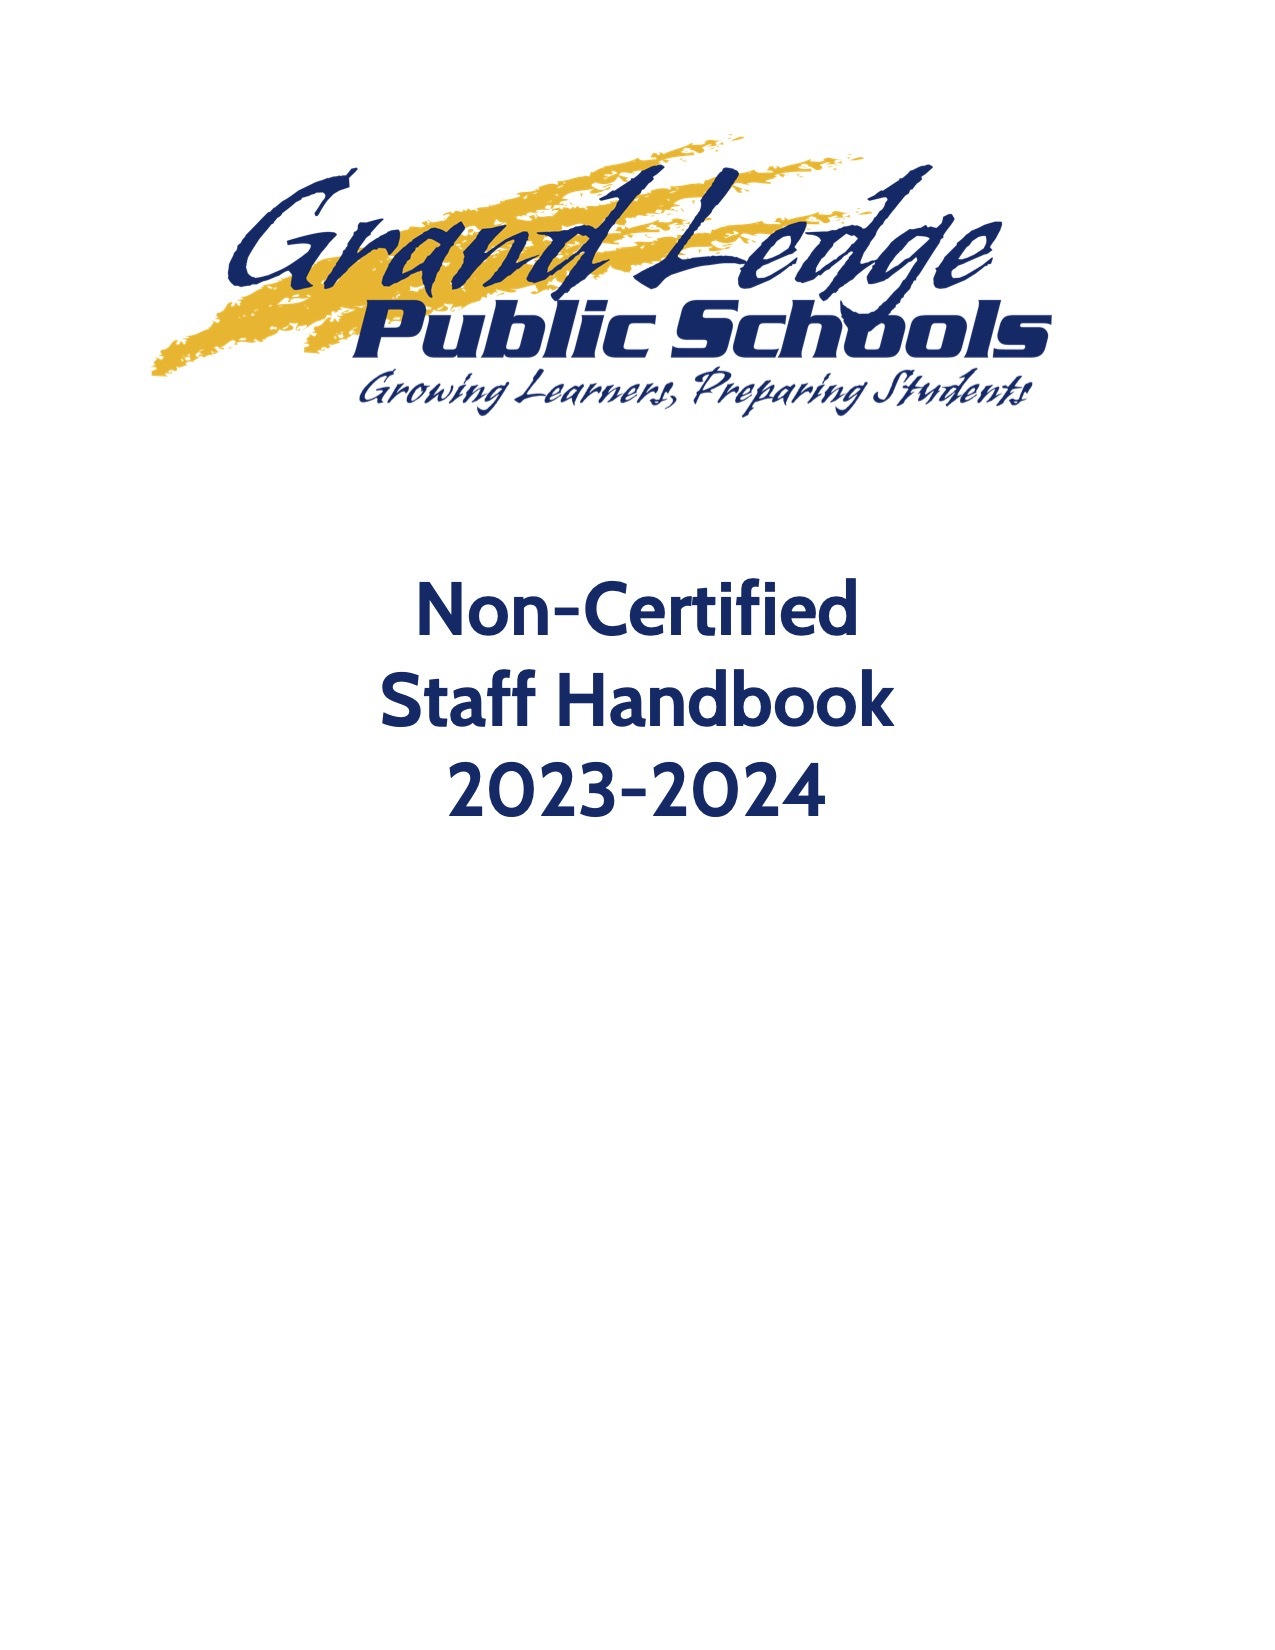 Non-Certified Staff Handbook